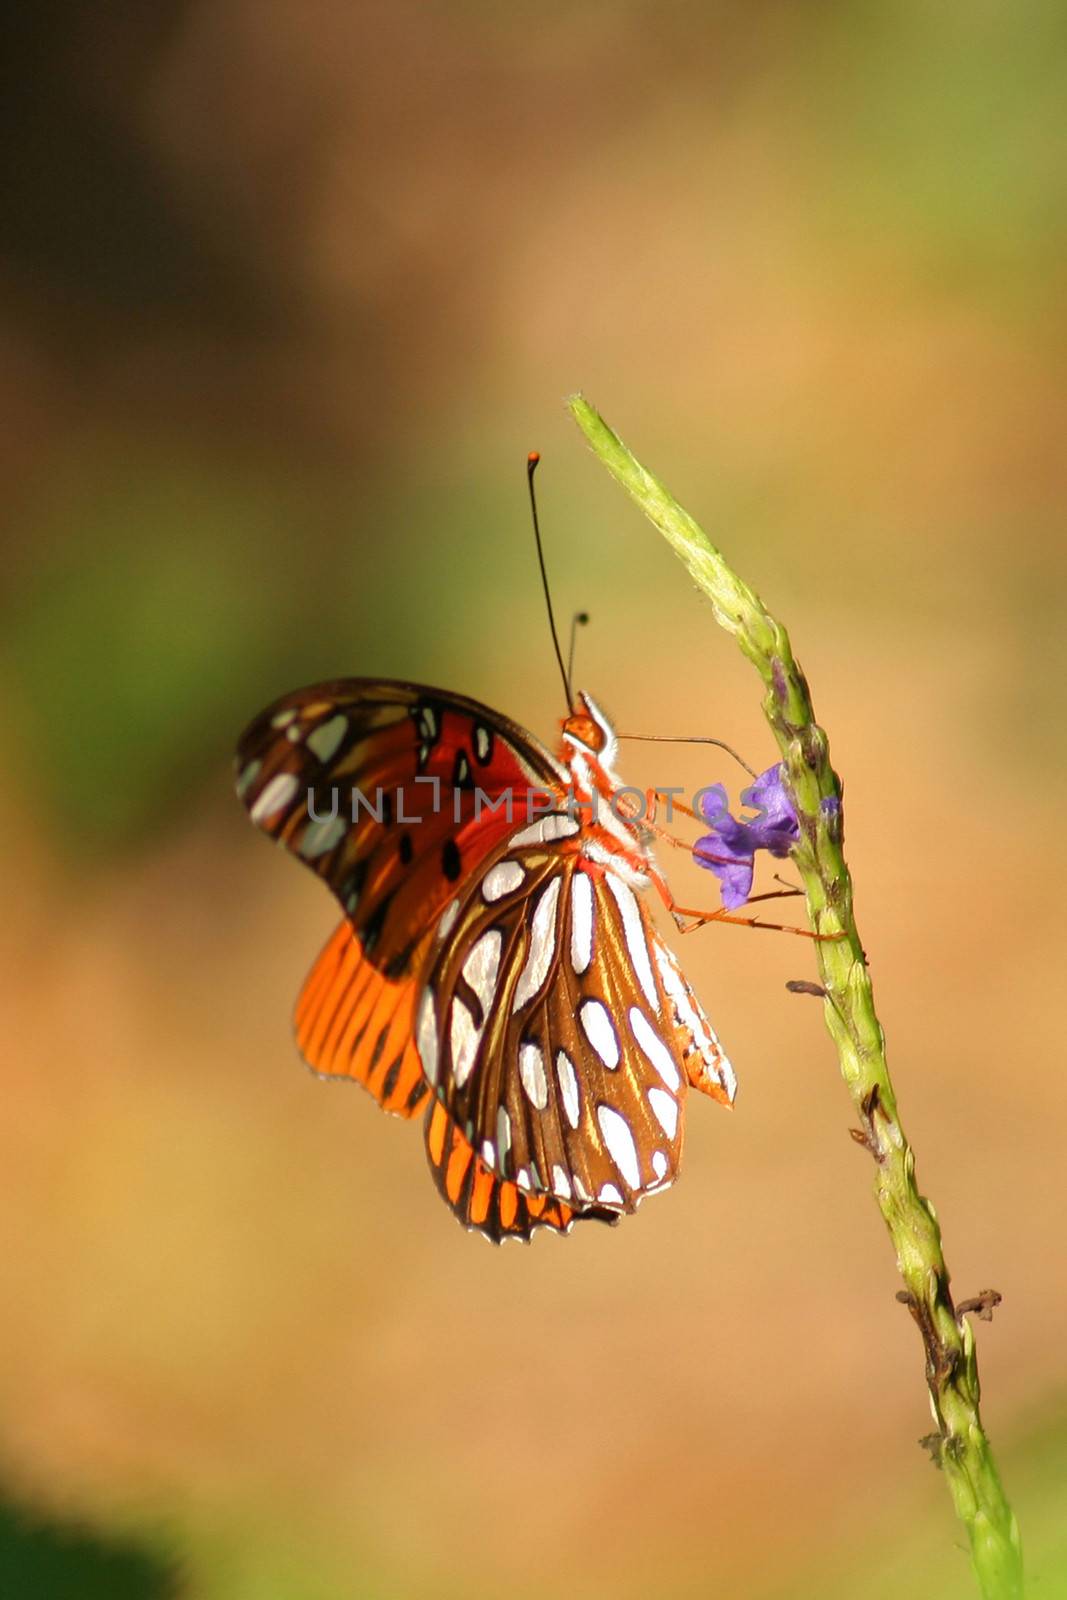 Butterfly on plant by CelsoDiniz